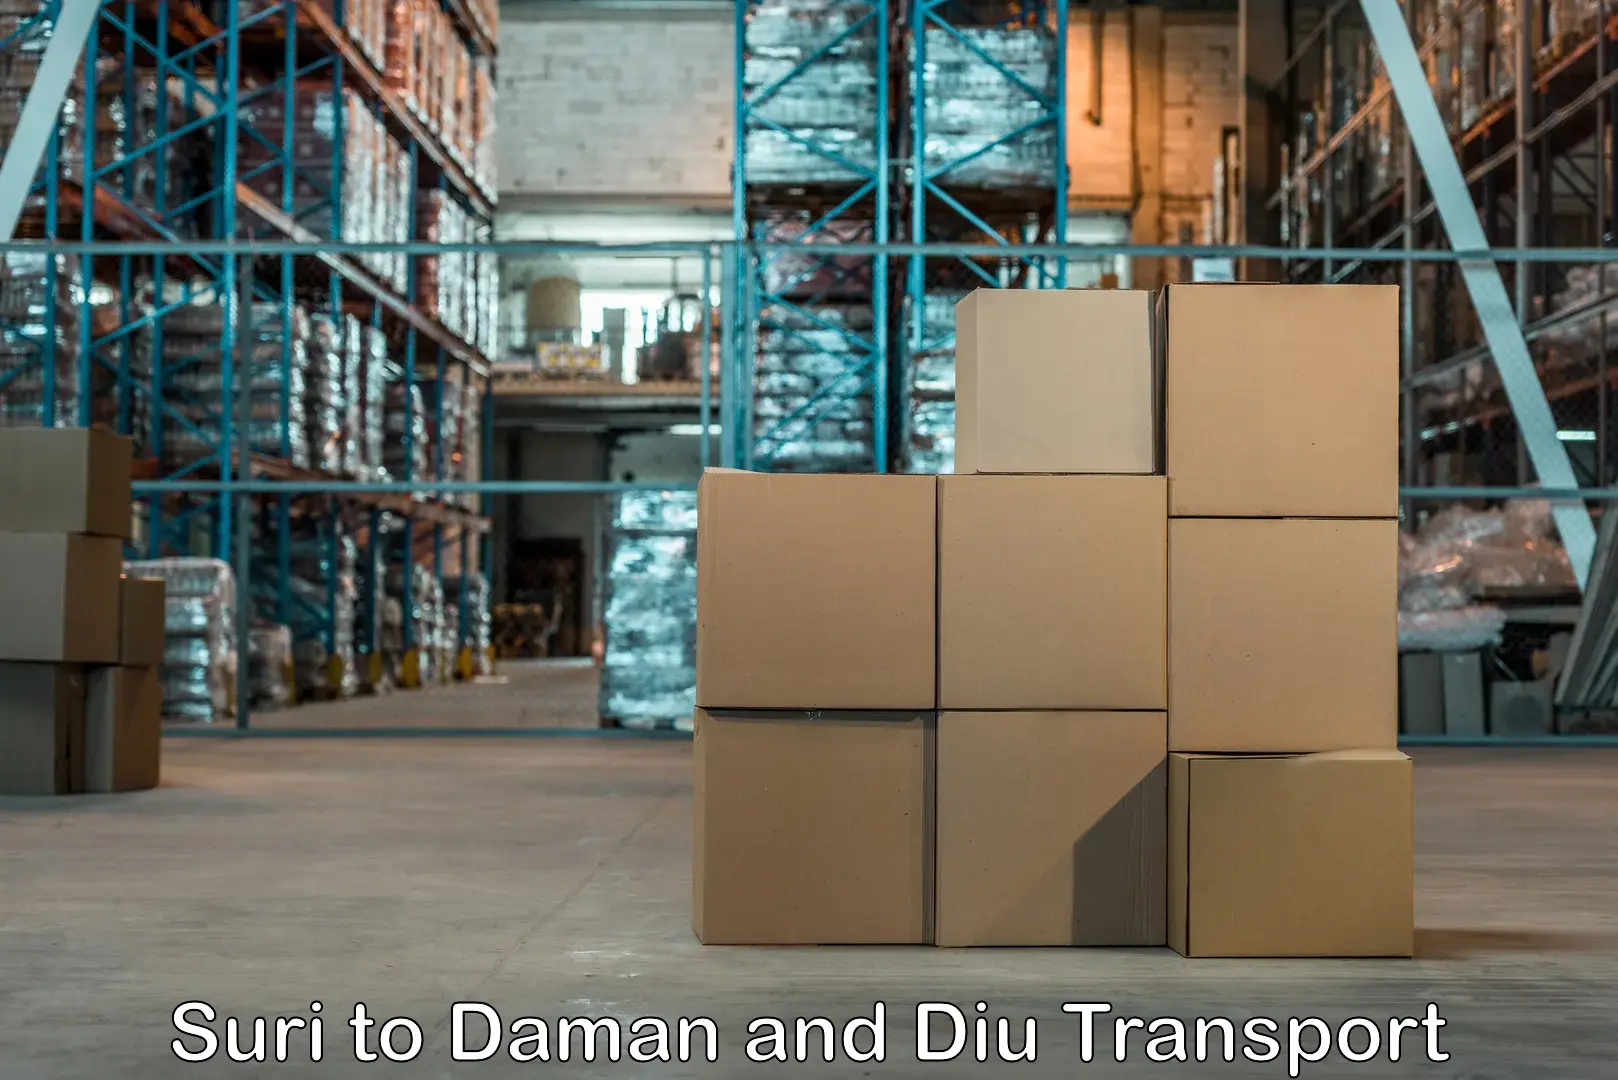 India truck logistics services Suri to Daman and Diu